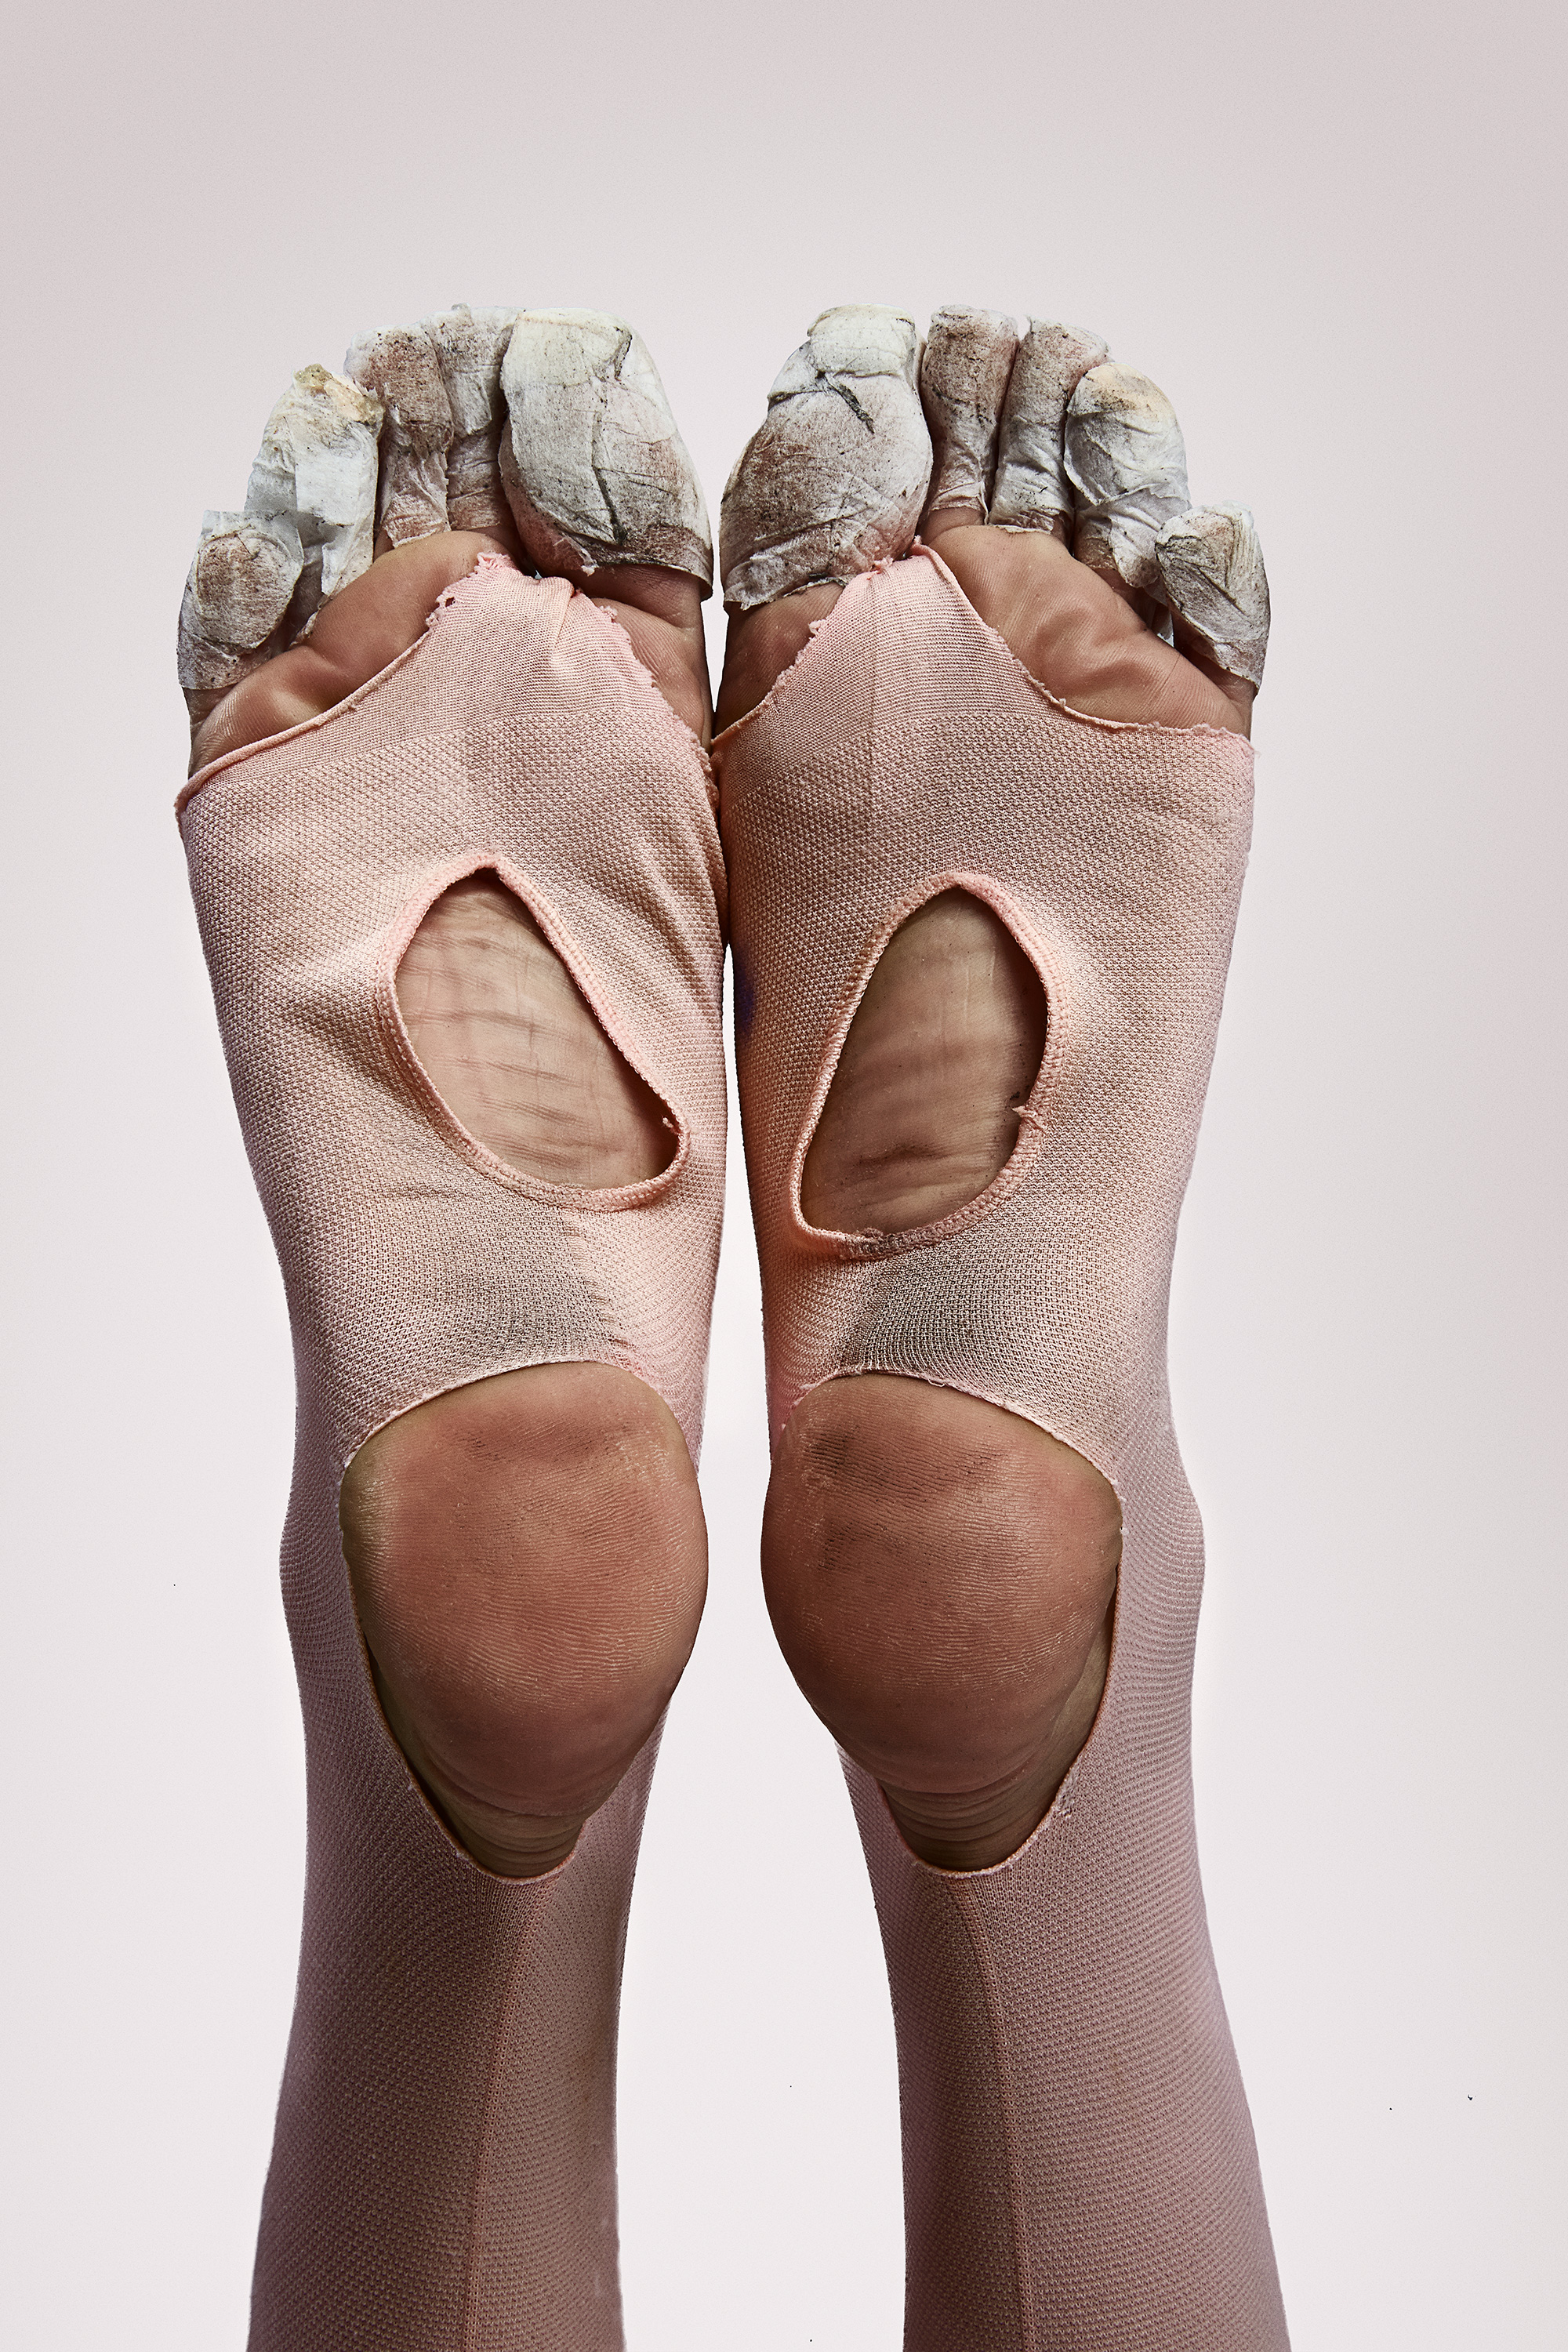 Portraits Of Feet Alberto Oviedo